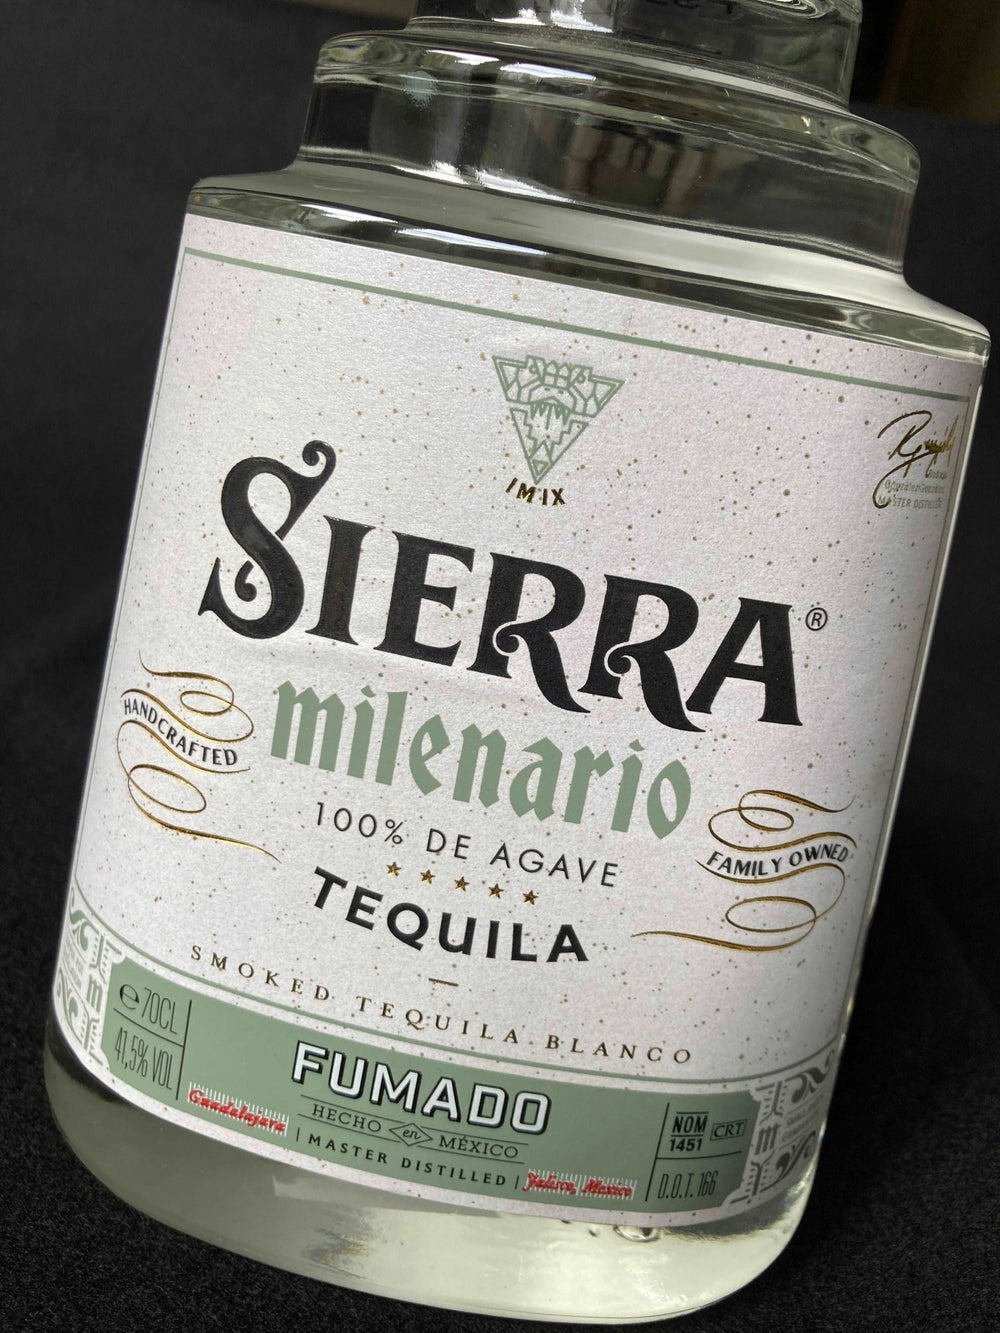 Sierra Milenario Tequila Fumado - Digital Distiller